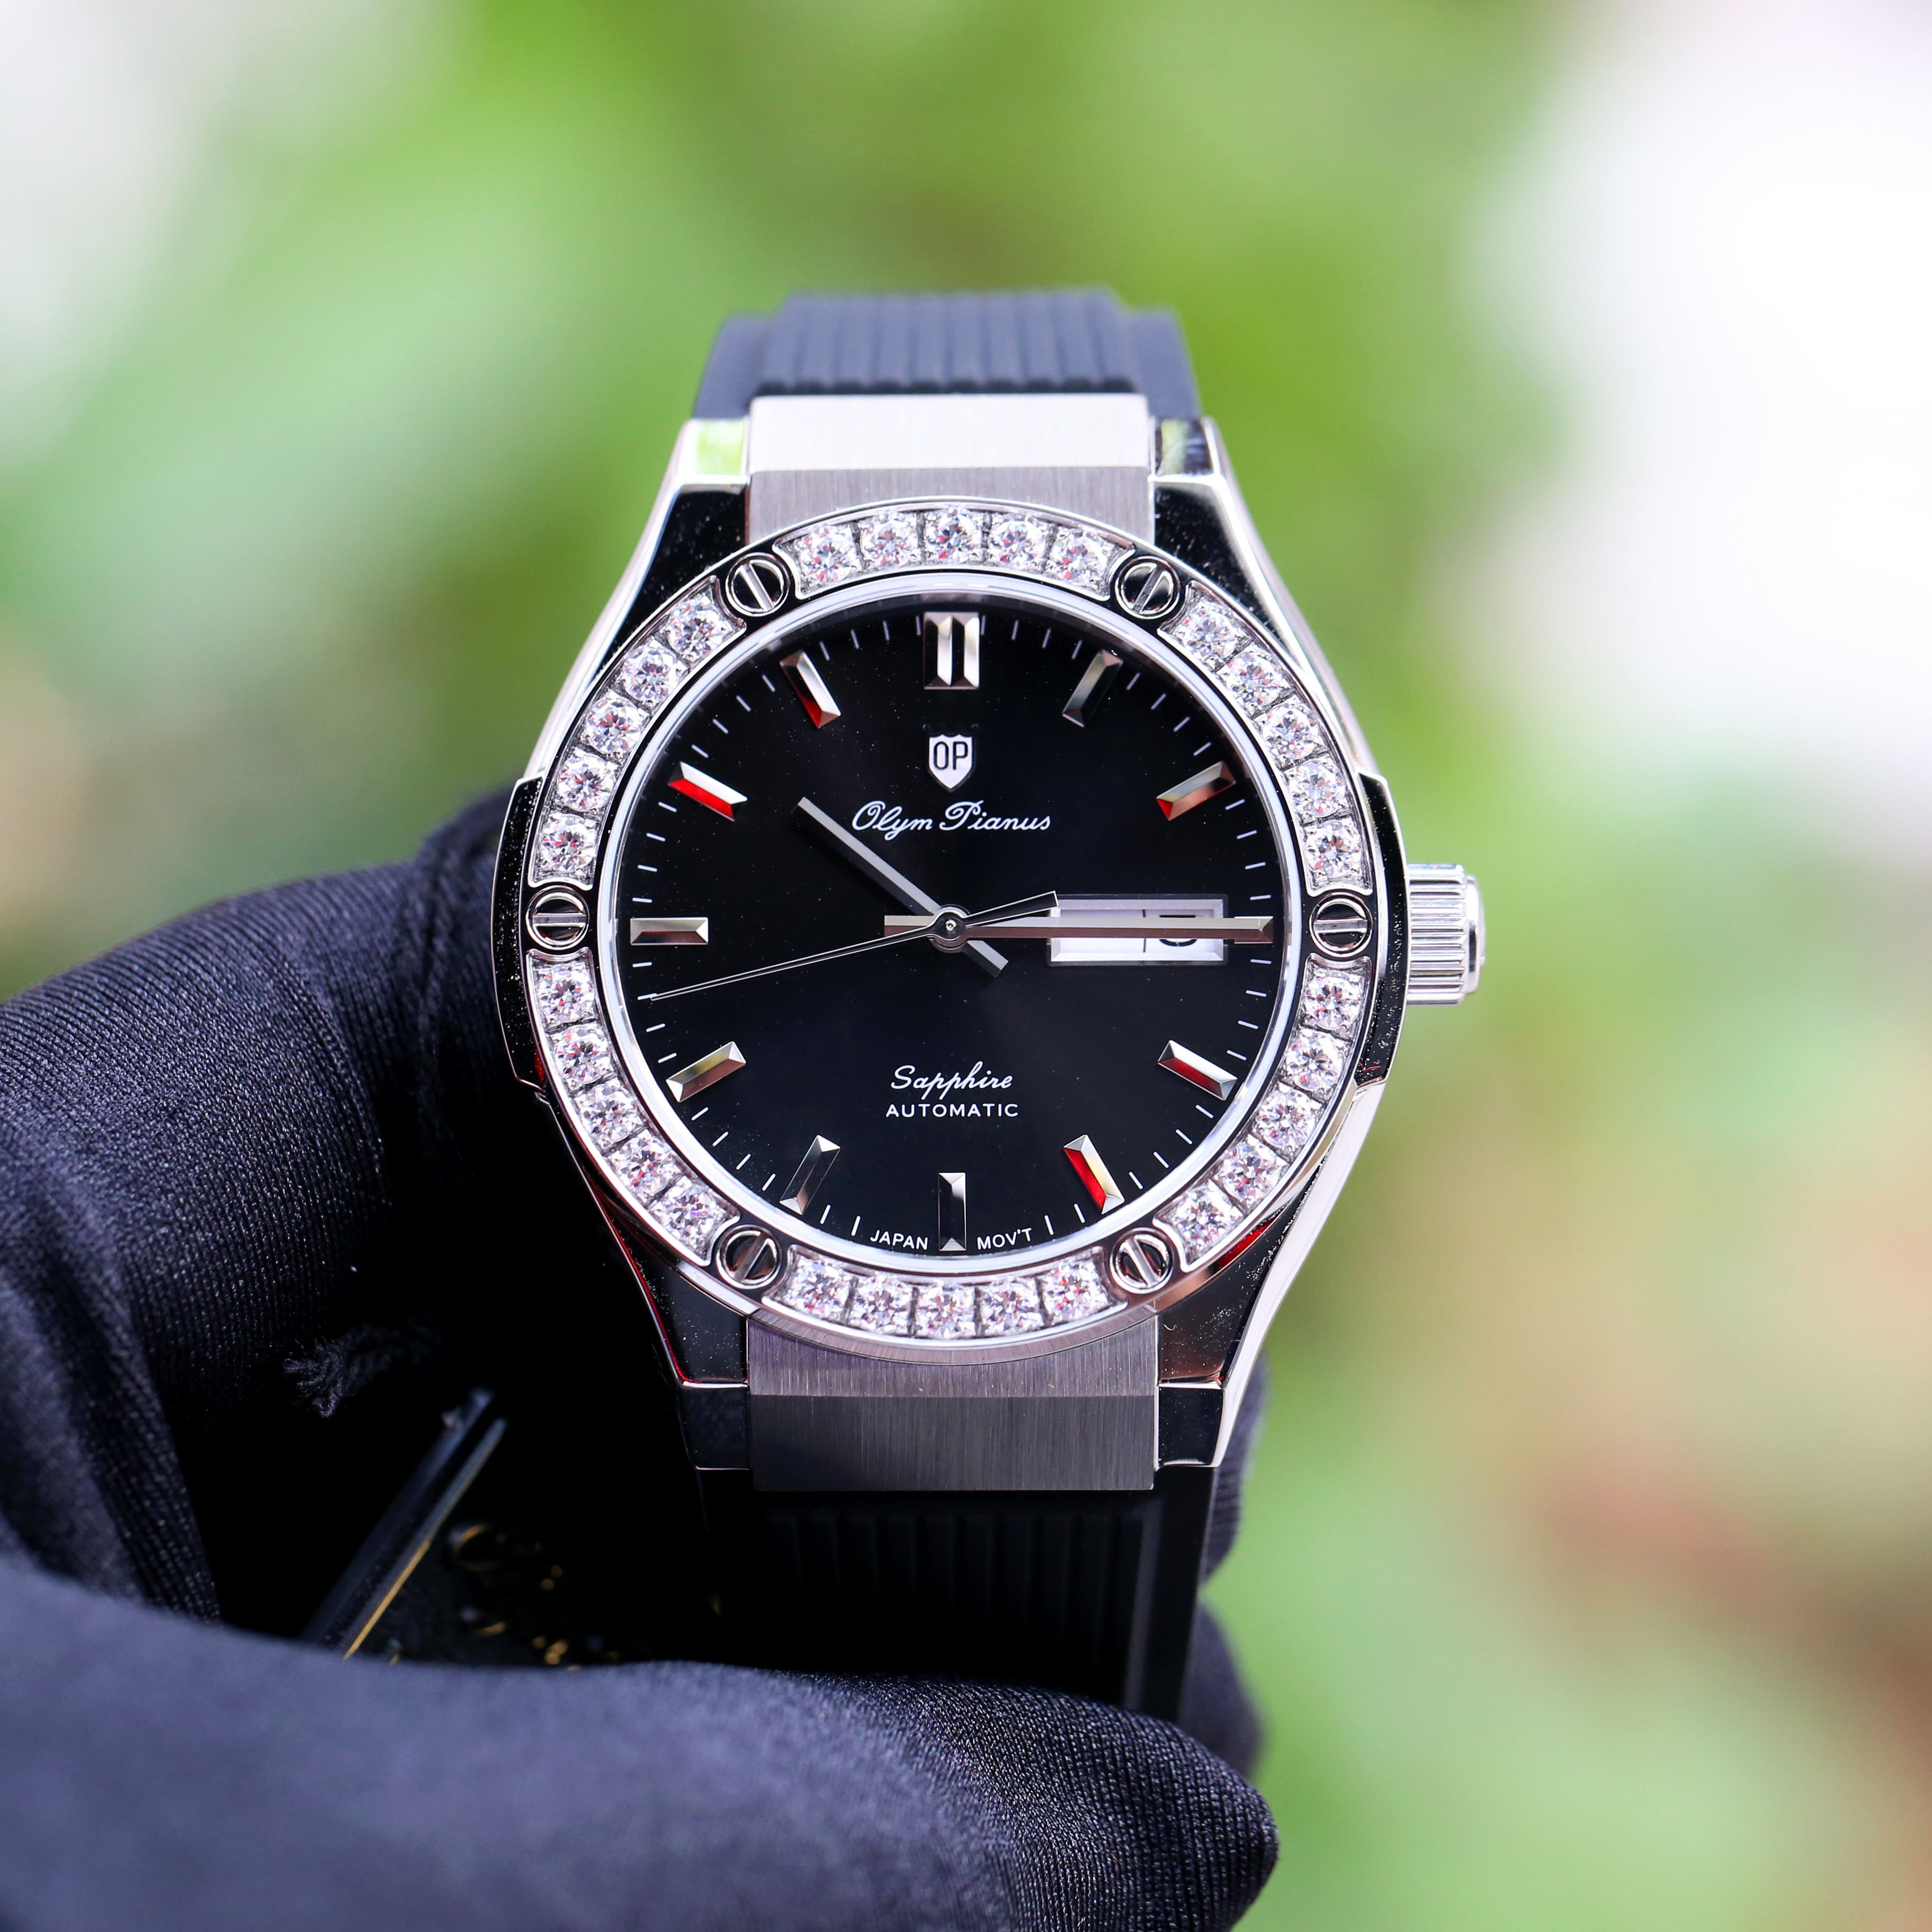 Đồng hồ nam Olym Pianus OP89322GSK chính hãng giá rẻ